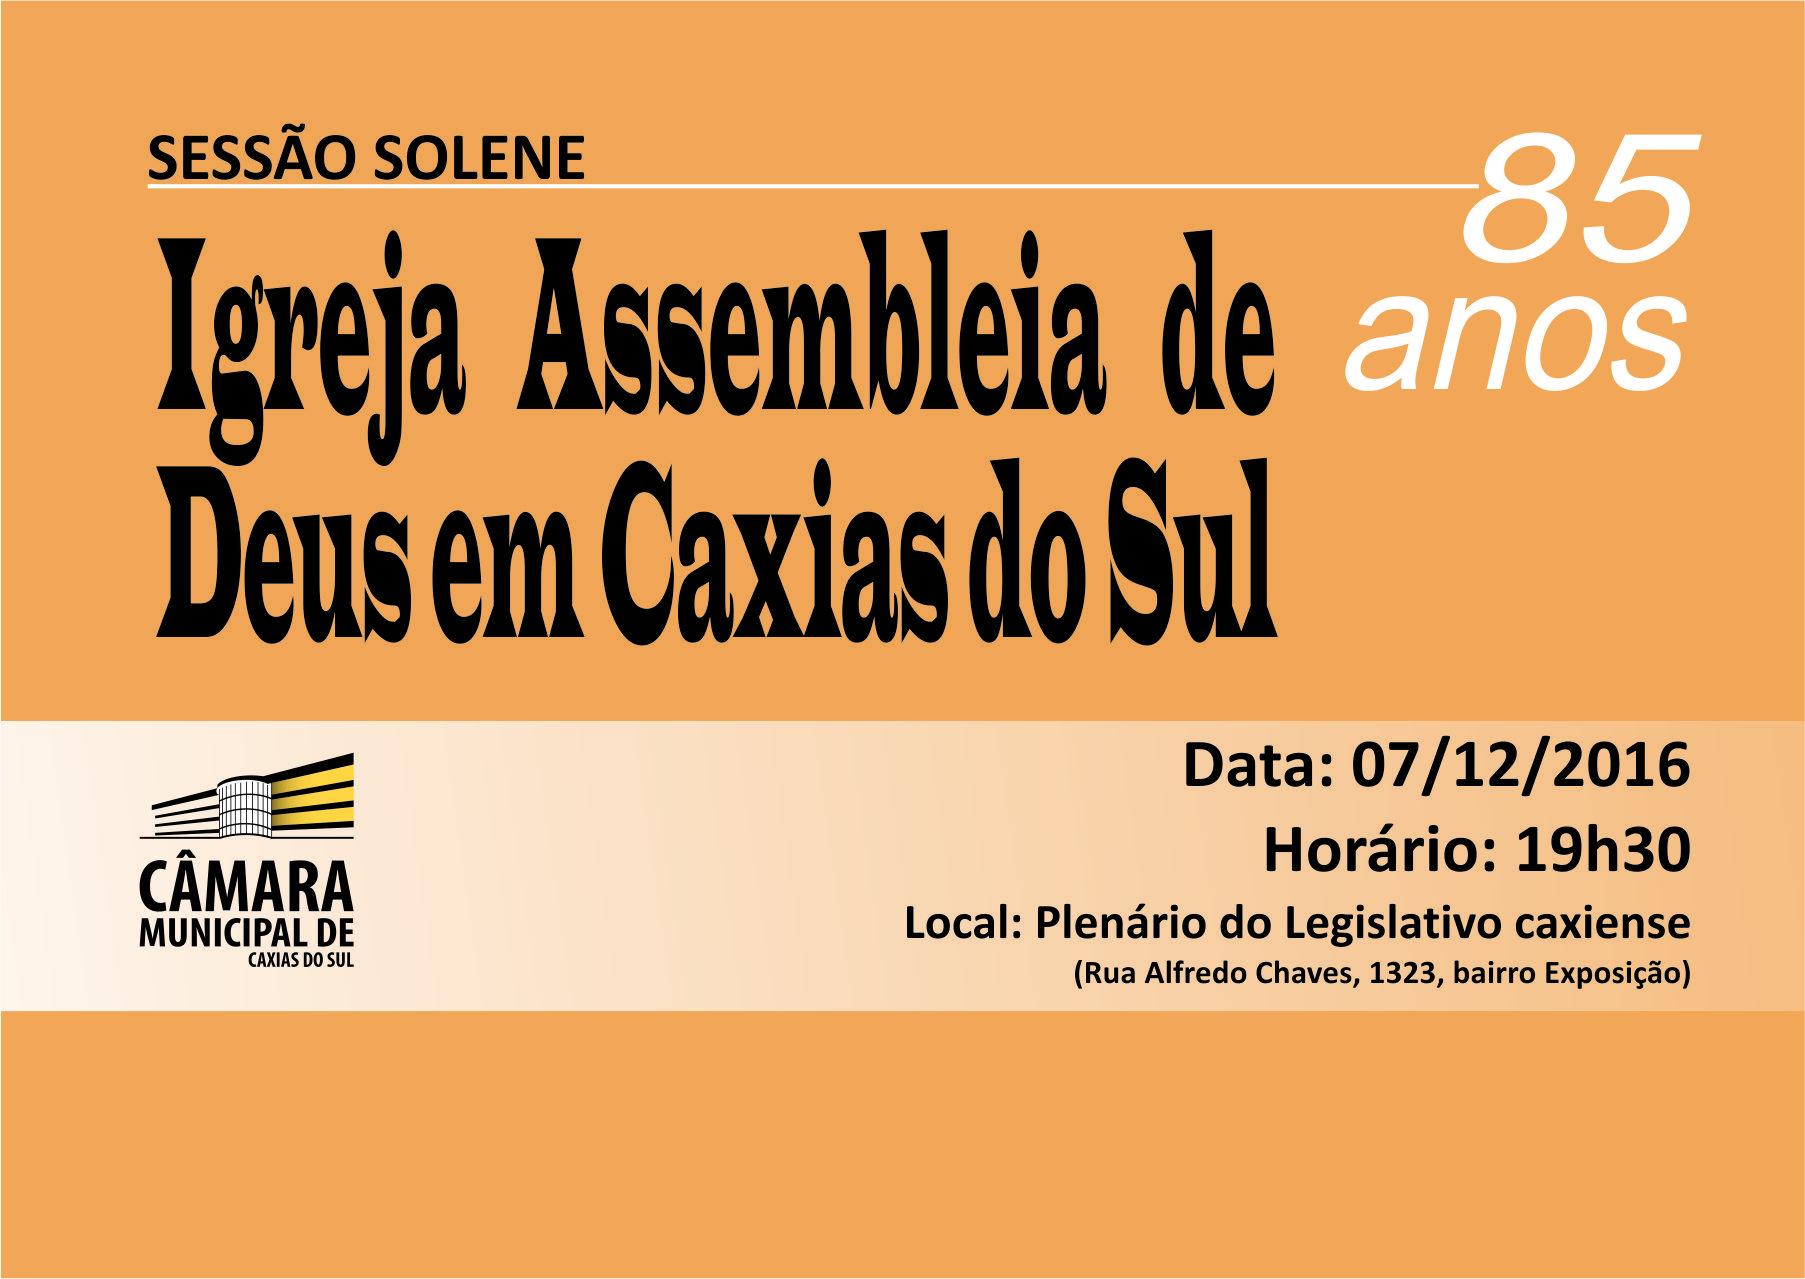 Legislativo caxiense destaca a trajetória de 85 anos da Igreja Assembleia de Deus em Caxias do Sul 